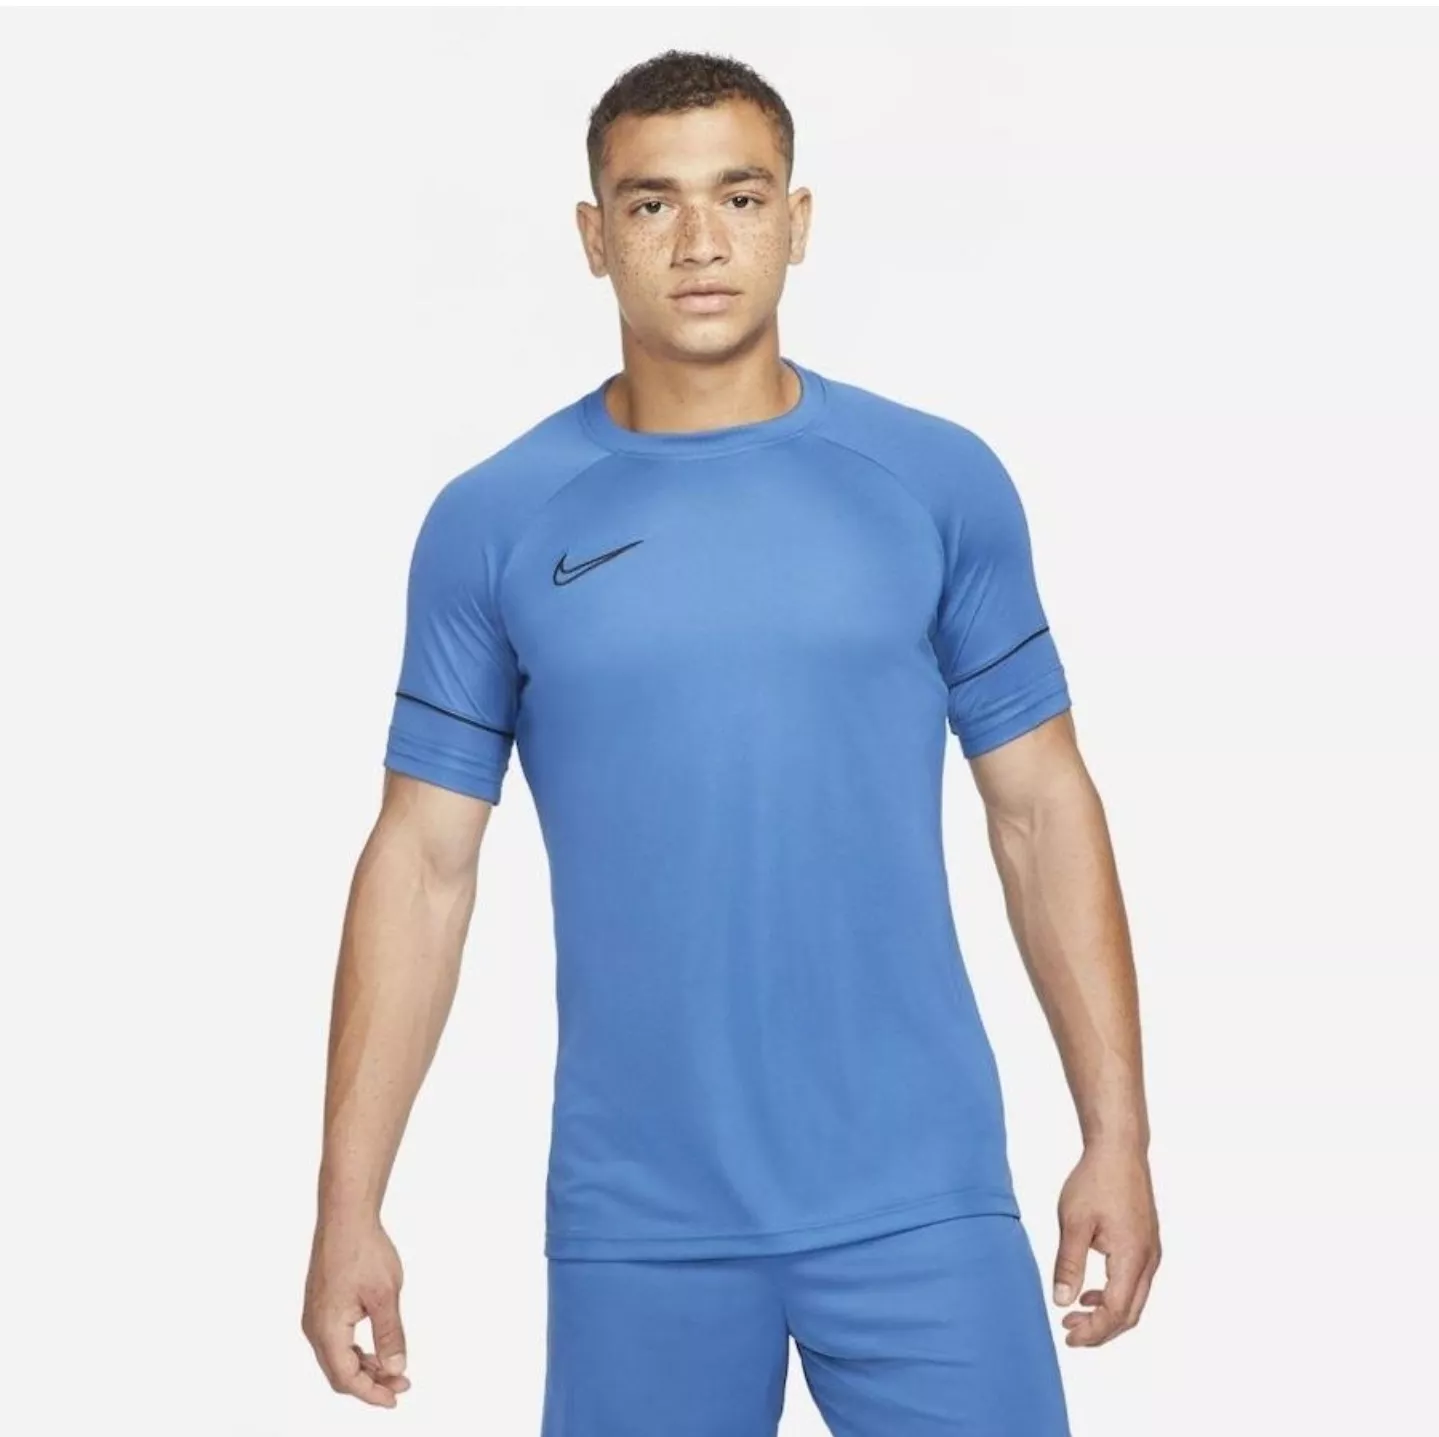 Camiseta Nike Academy - Masculina [p, G, Gg]